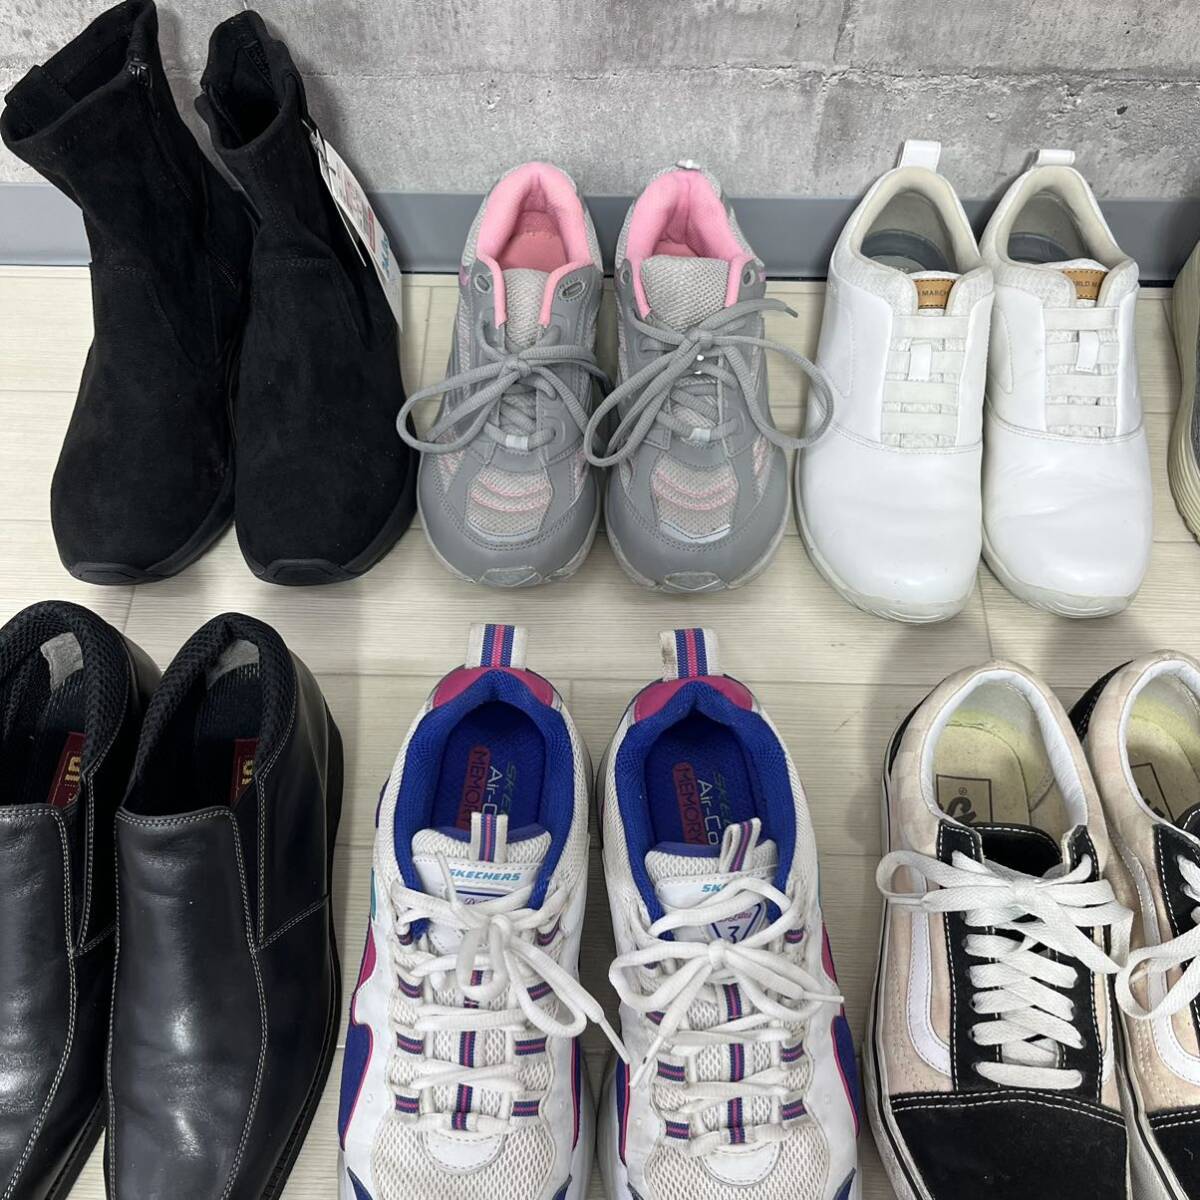 M5-5#① мужской обувь продажа комплектом 20 позиций комплект размер 25cm~28cm спортивные туфли спортивная обувь Adidas NIKE др. спортивный бюстгальтер ndo